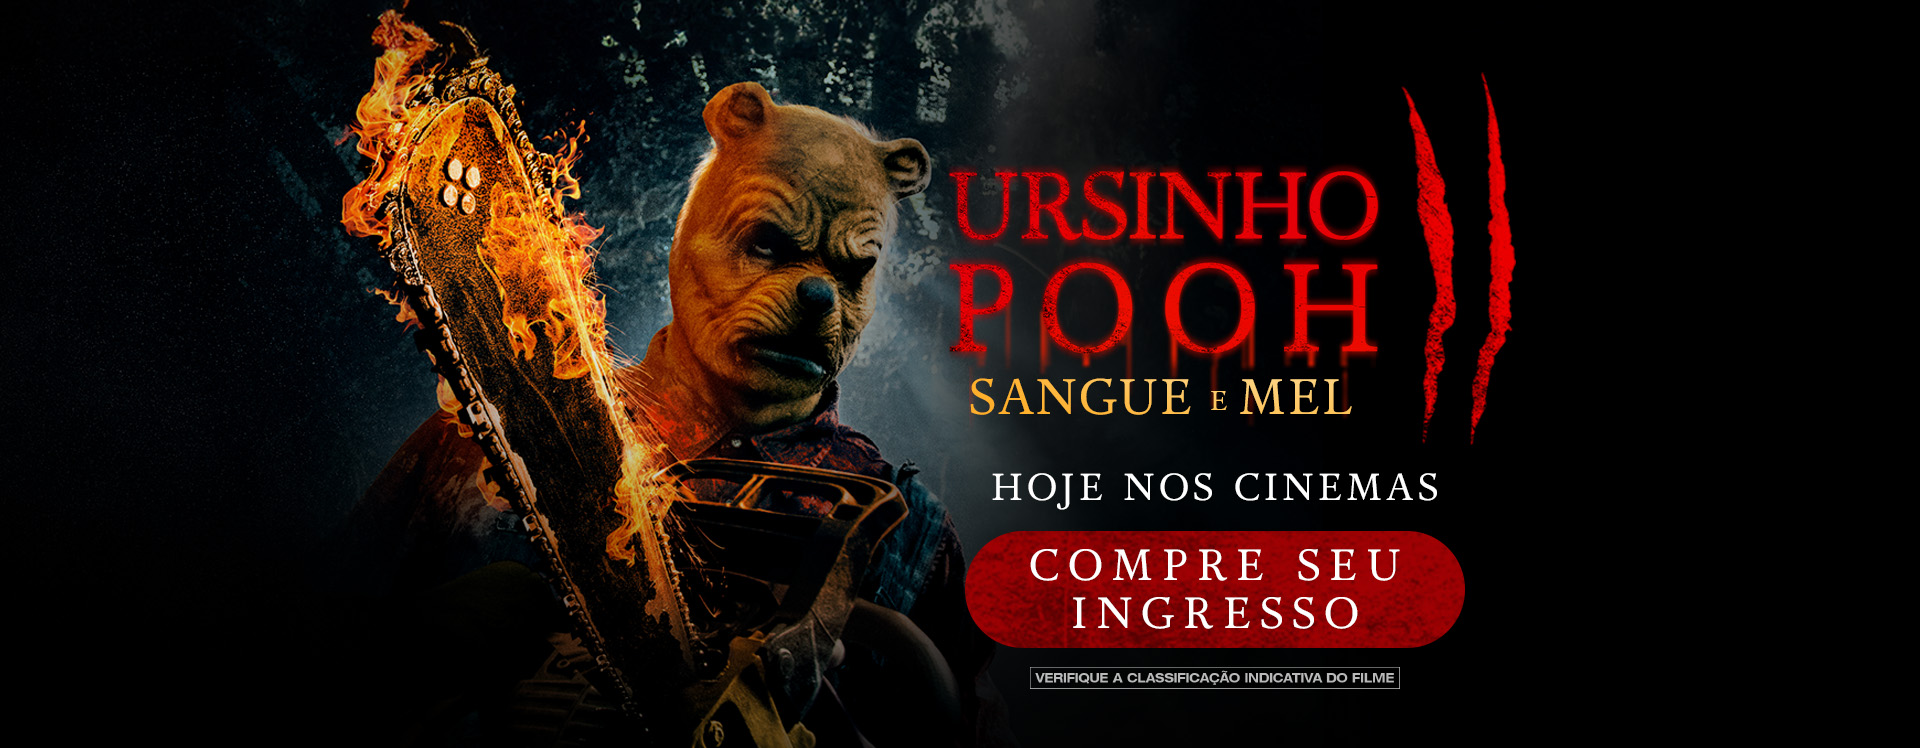 Ursinho Pooh: S